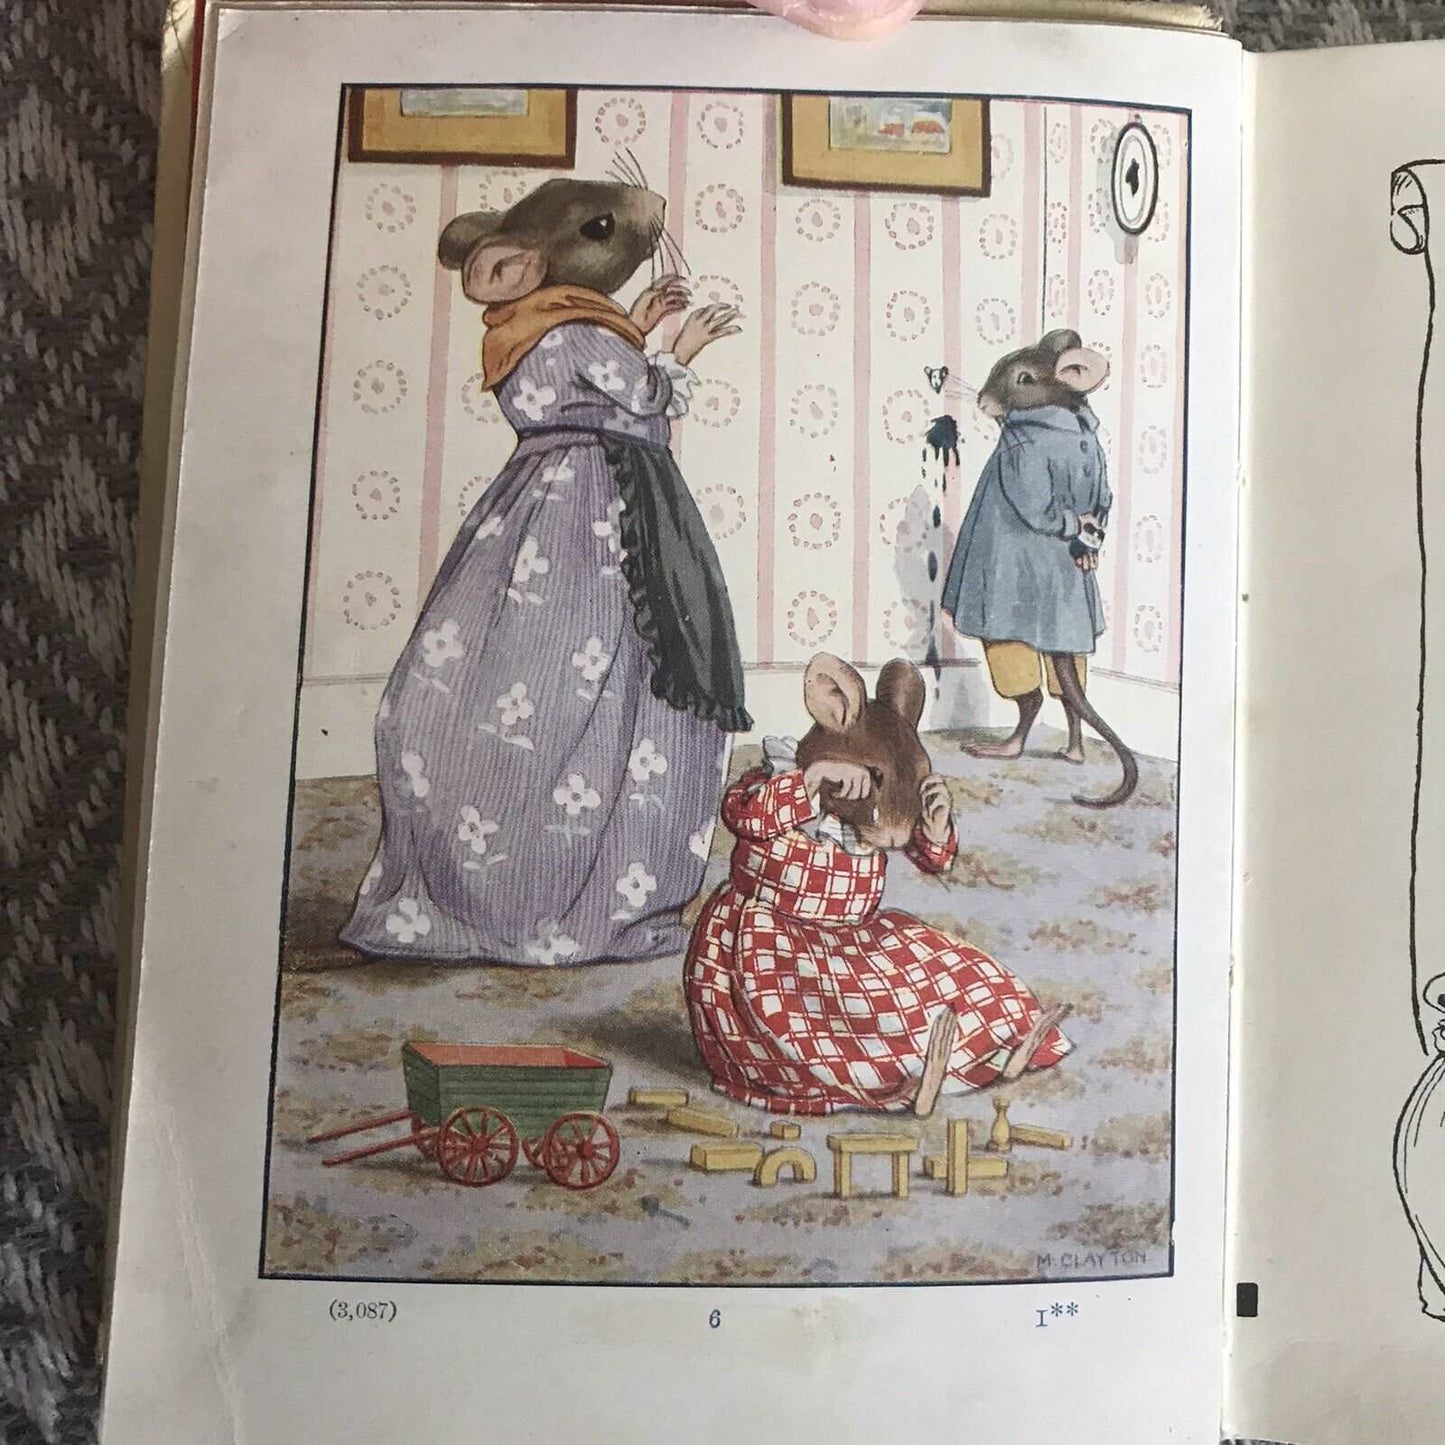 1912*1st* The Georgie-Porgie Book - Jacqueline & Margaret Clayton (Nelson) Honeyburn Books (UK)